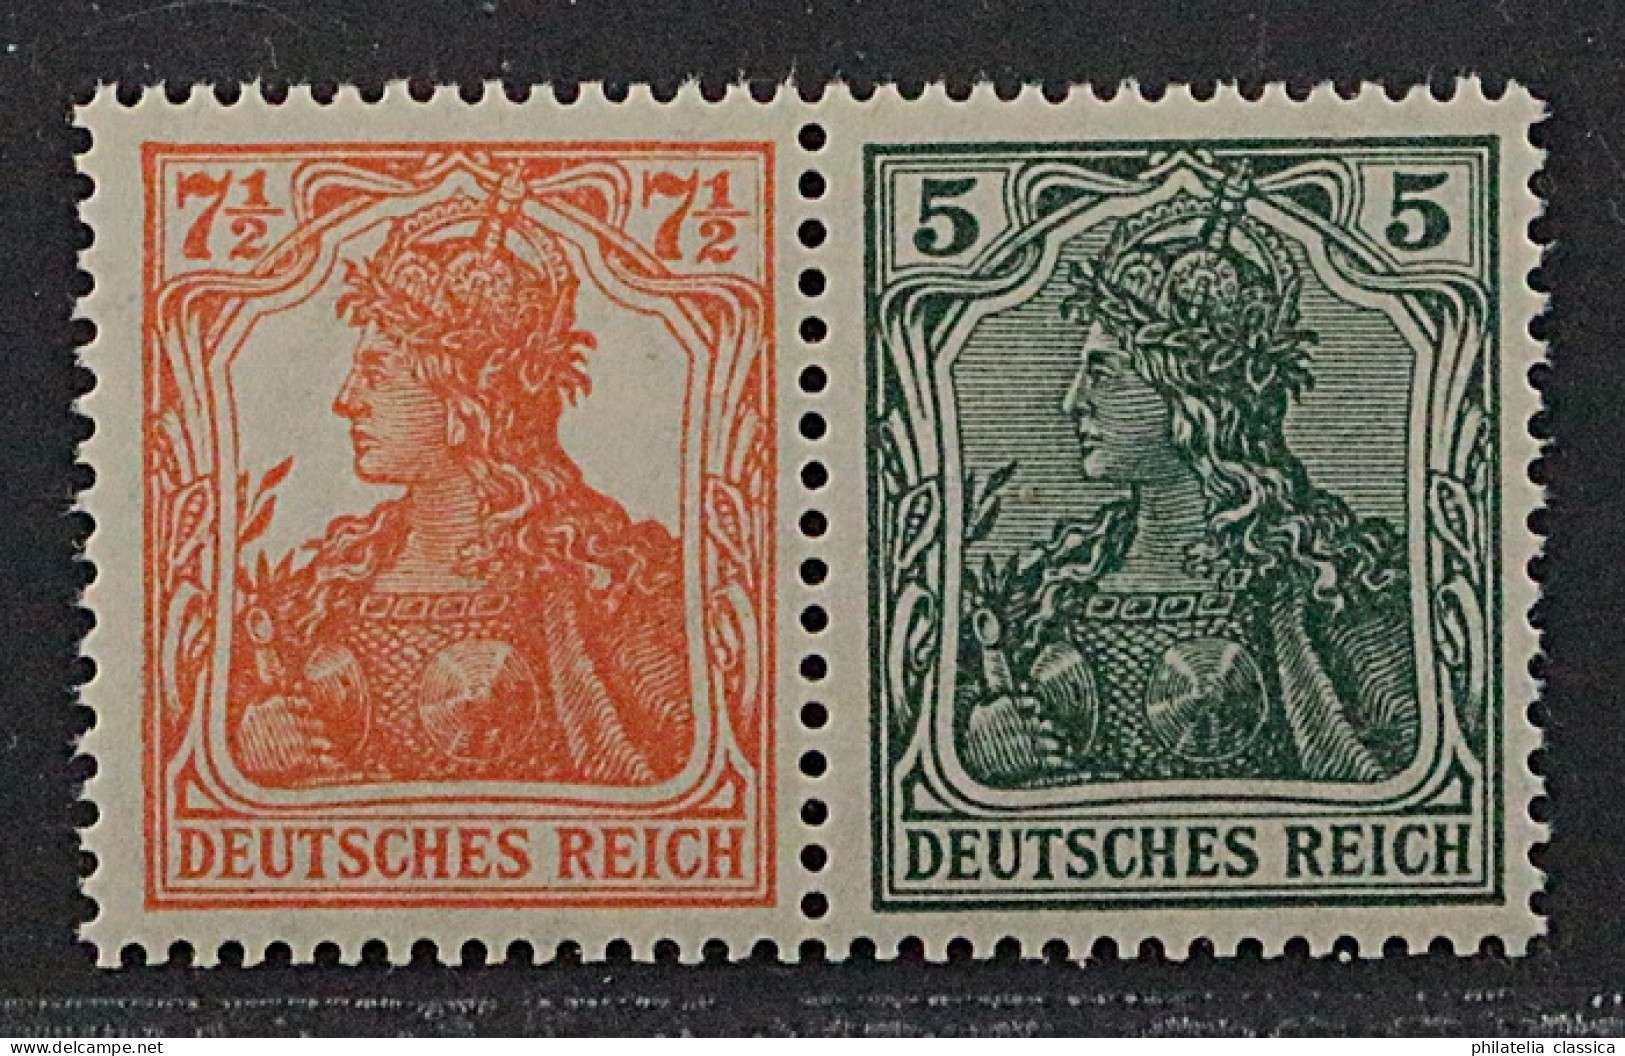 1918, Dt.Reich Zusammendruck W 6 Ab ** Germania 7 1/2 Pfg. + 5 Pfg, KW 200,-€ - Booklets & Se-tenant